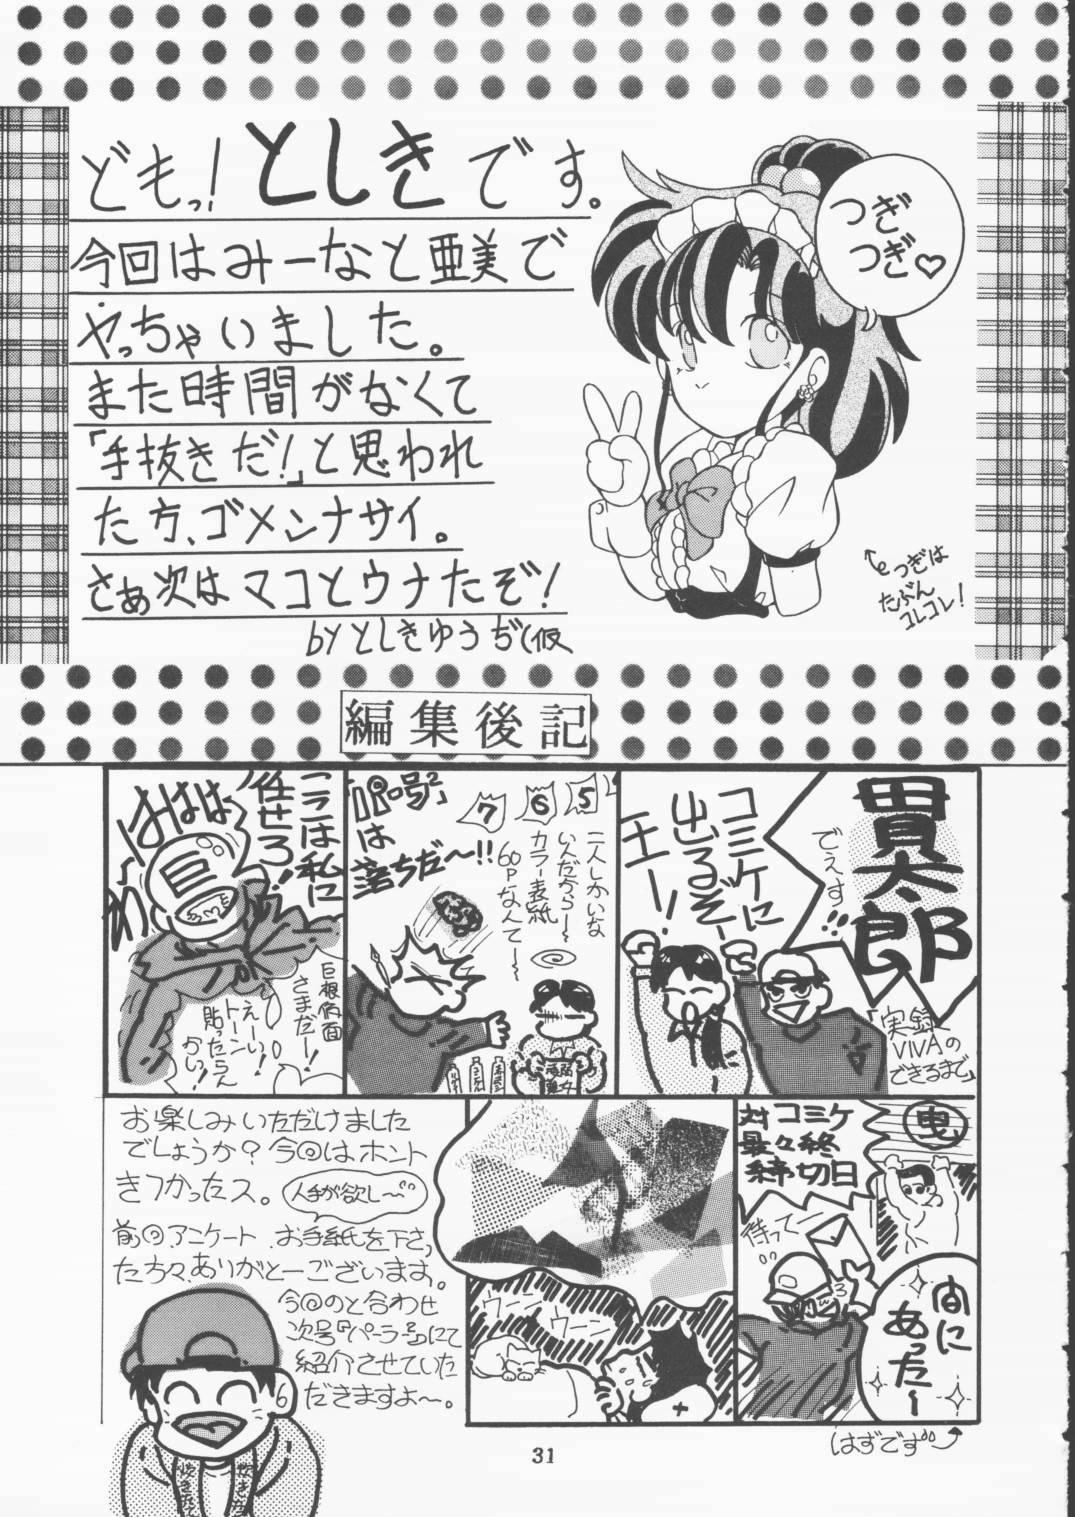 Boy Girl Moon Sailor VIVA! - Sailor moon Blow Jobs Porn - Page 32